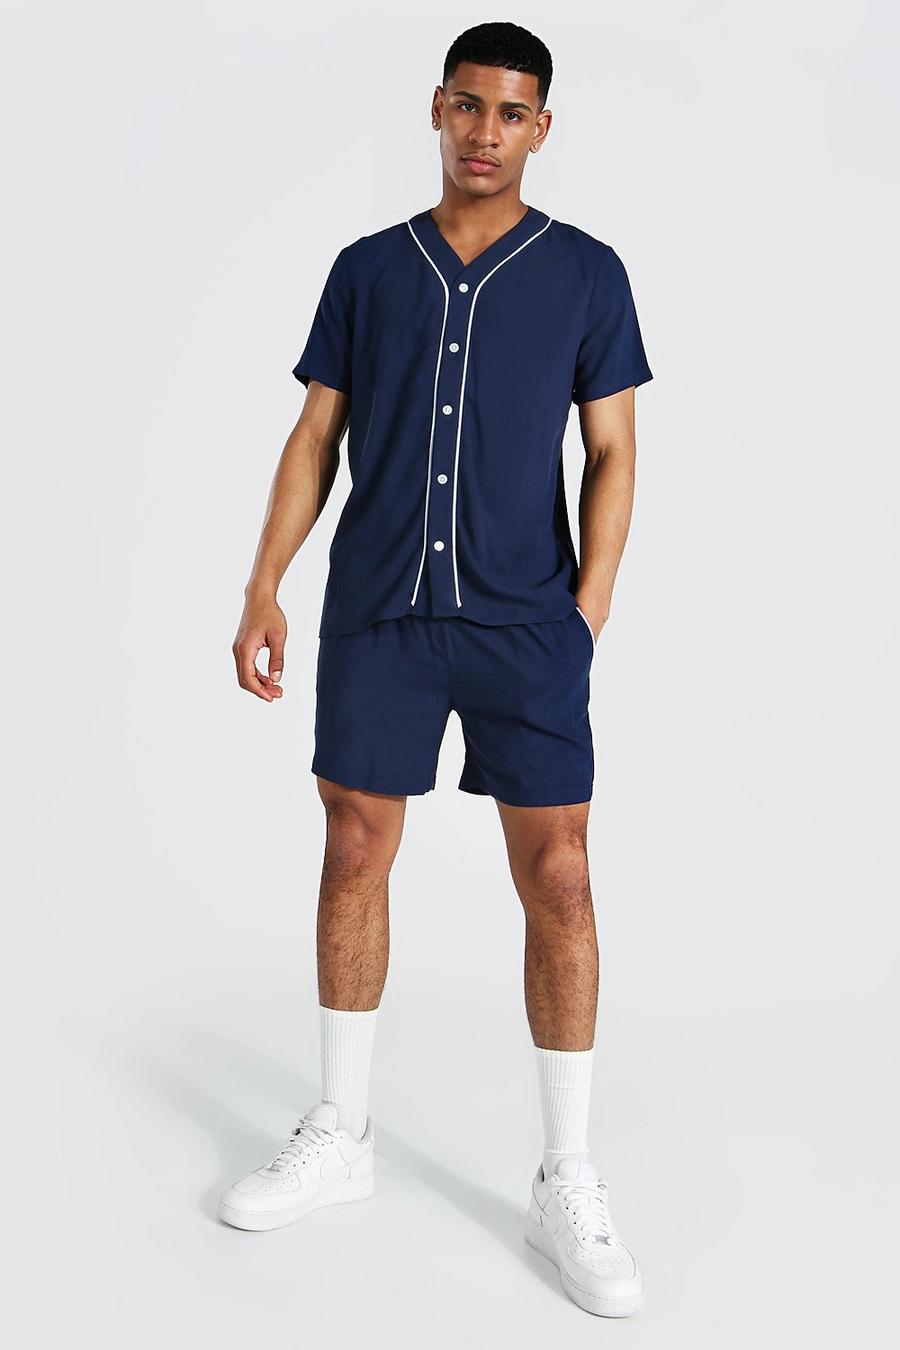 Navy Short Sleeve Viscose Baseball Shirt And Short image number 1